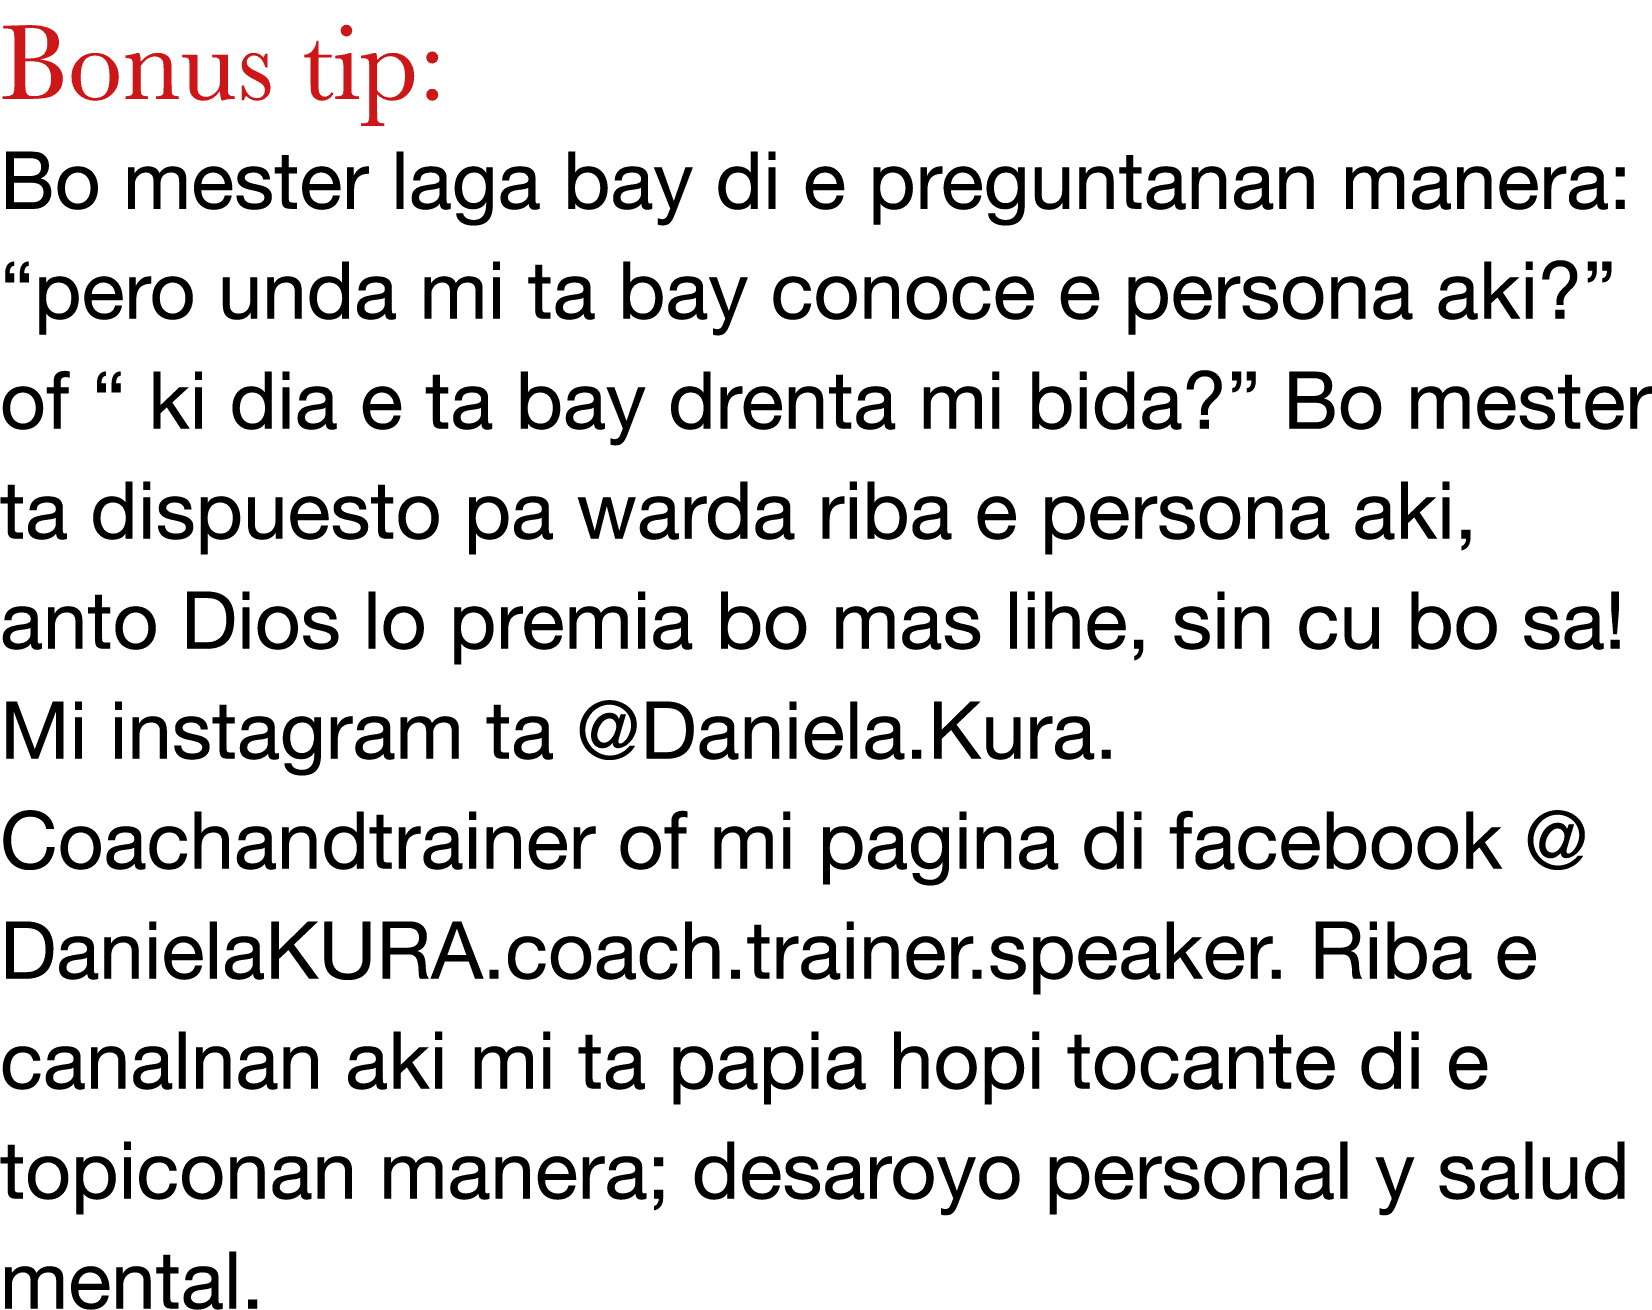 Bonus tip: Bo mester laga bay di e preguntanan manera:  pero unda mi ta bay conoce e persona aki   of   ki dia e ta b   